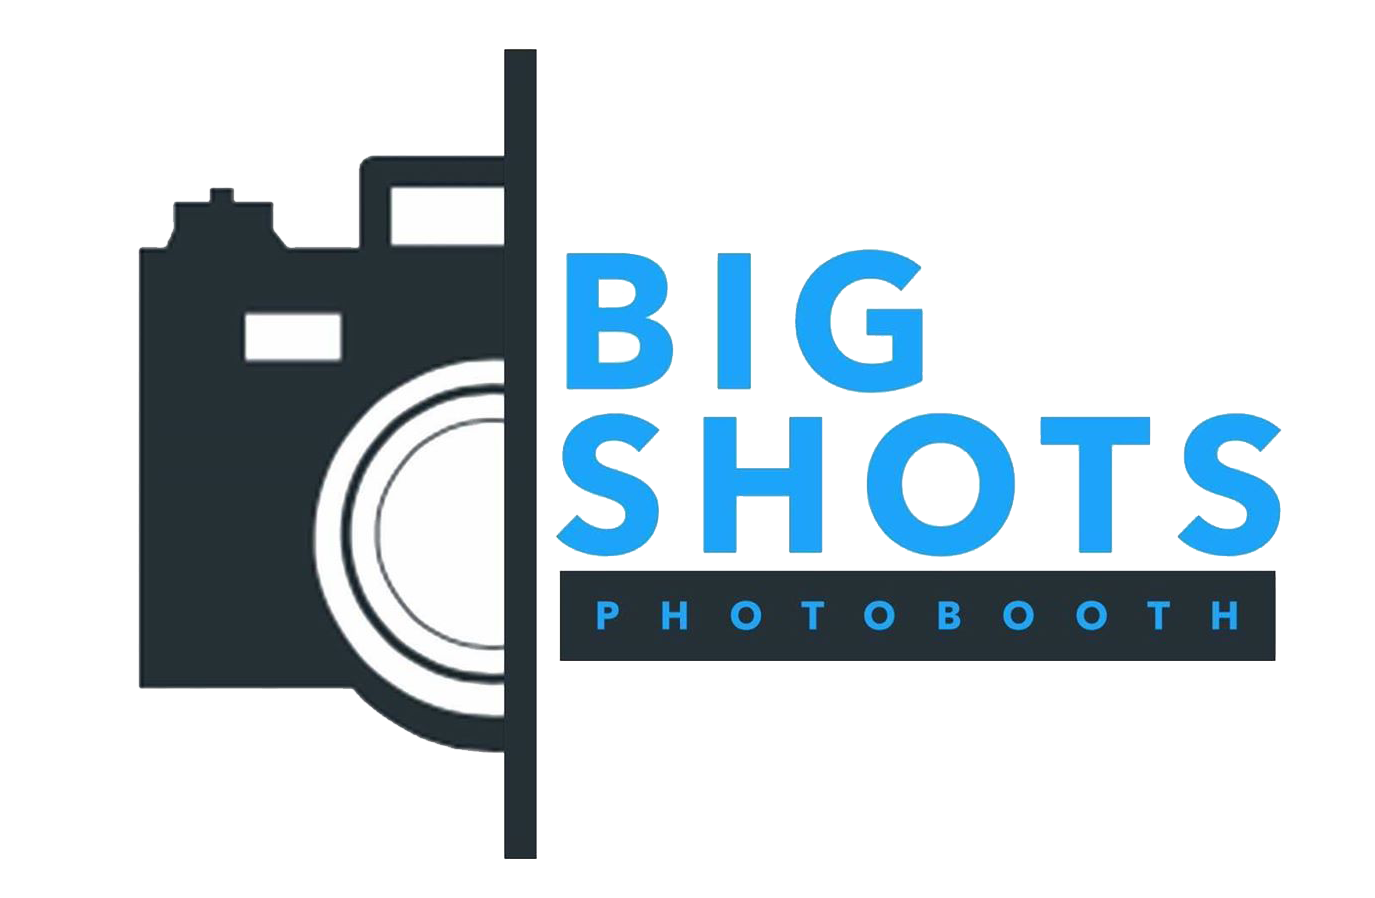 BIG SHOTS PHOTOBOOTH